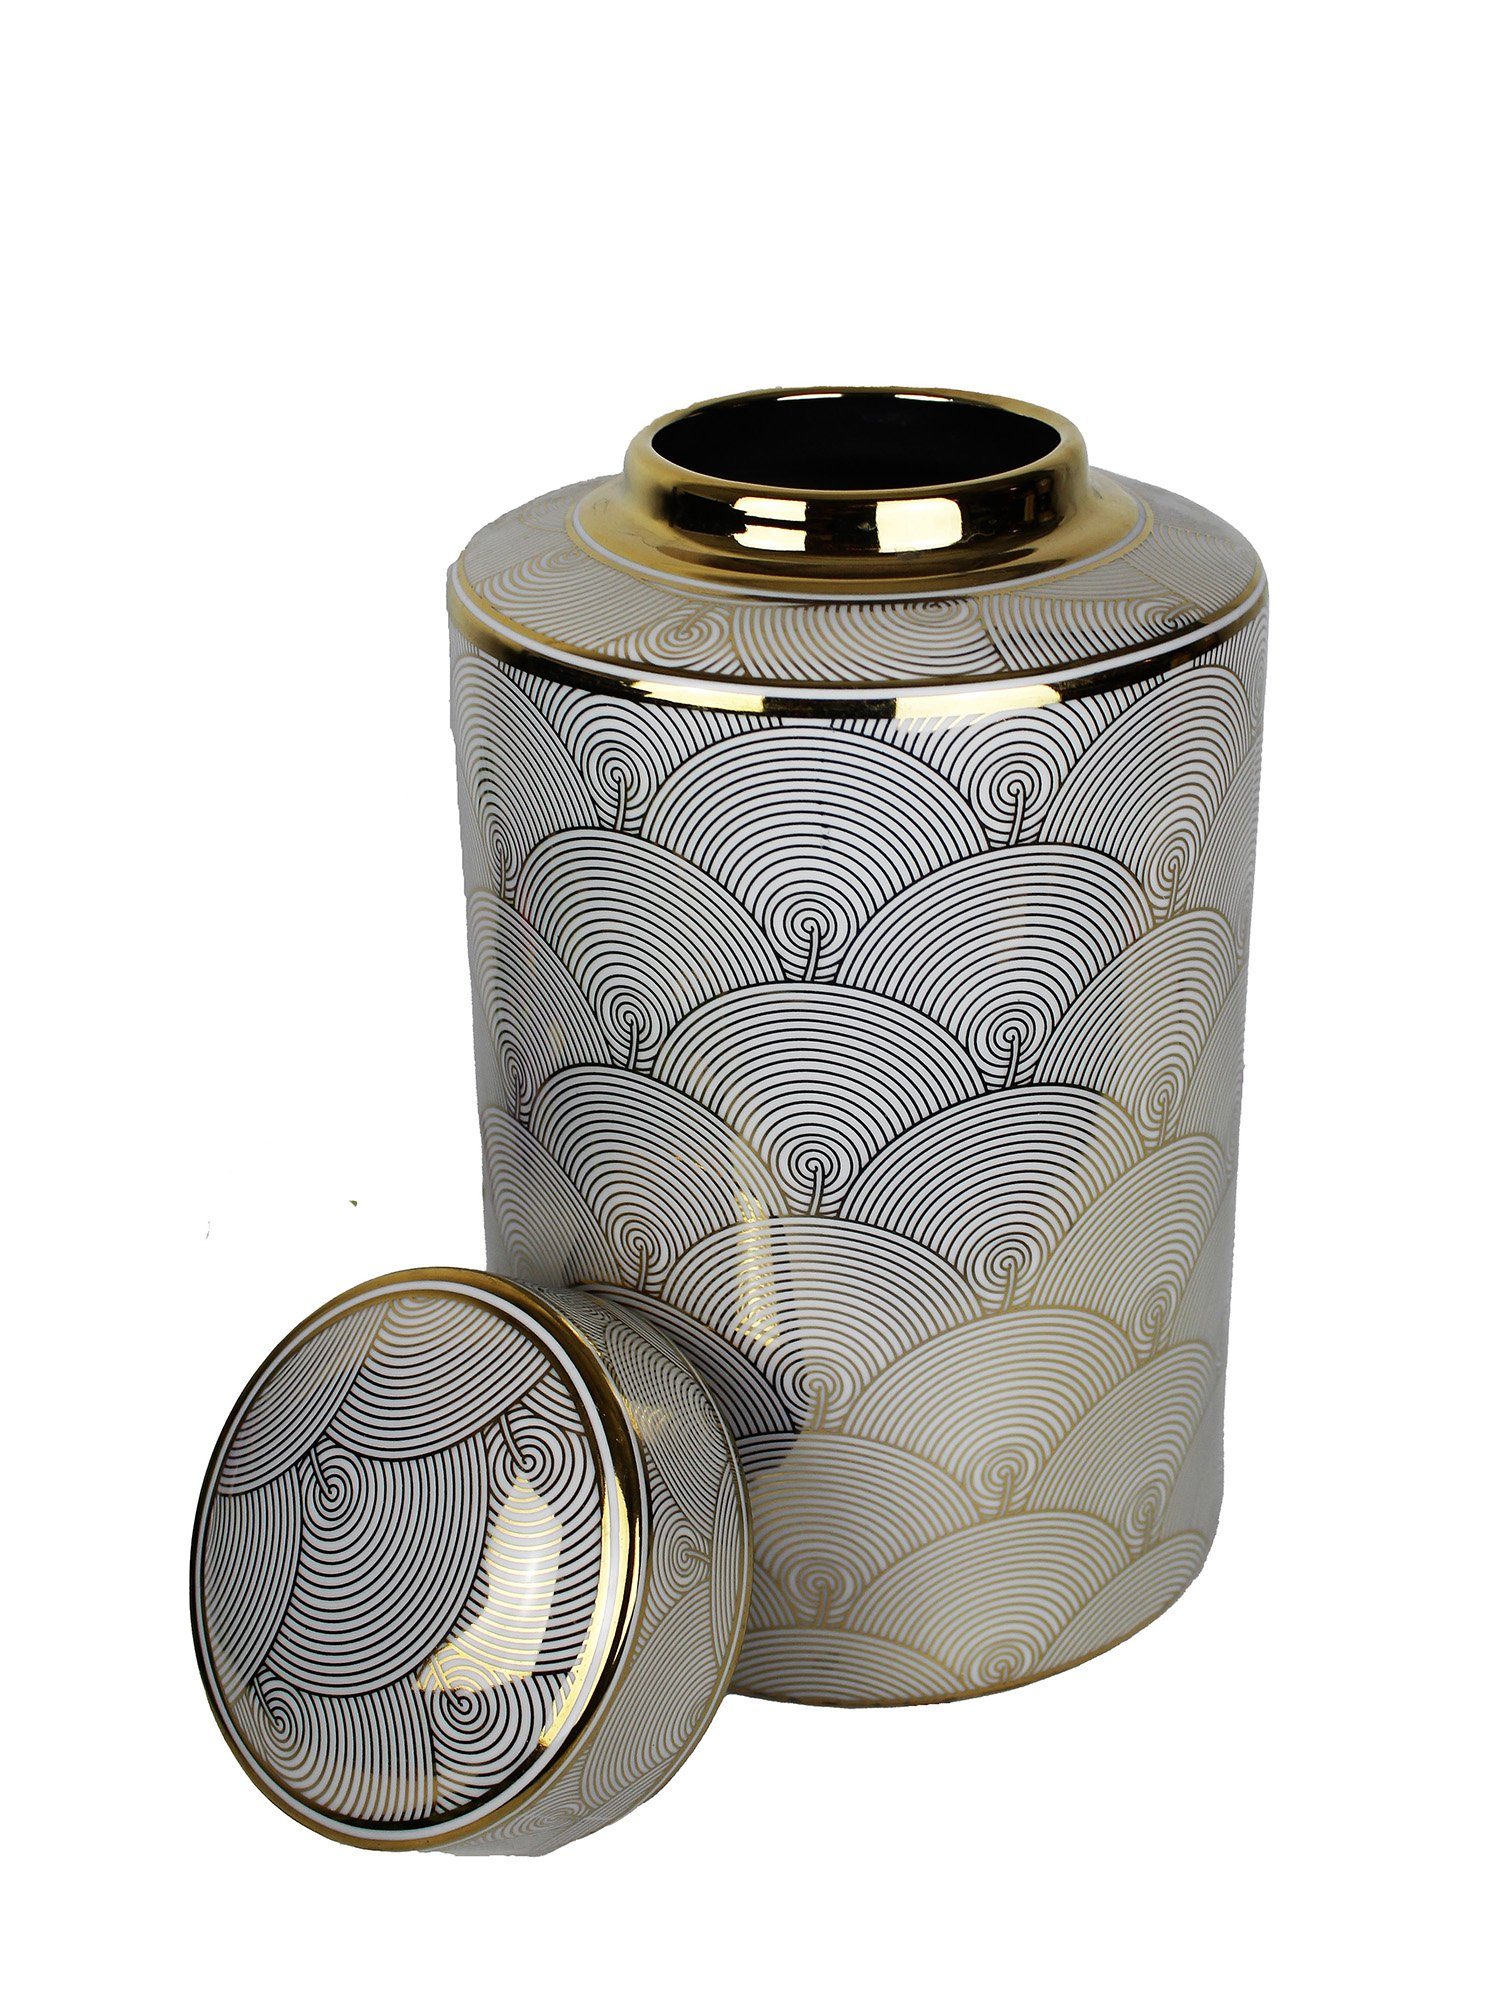 Cosy Home Ideas Tischvase Deckelvase Keramik weiß gold Wellenmuster Ingwertopf (1 Stück, 1x Keramikvase), handgefertigt in Premiumqualität